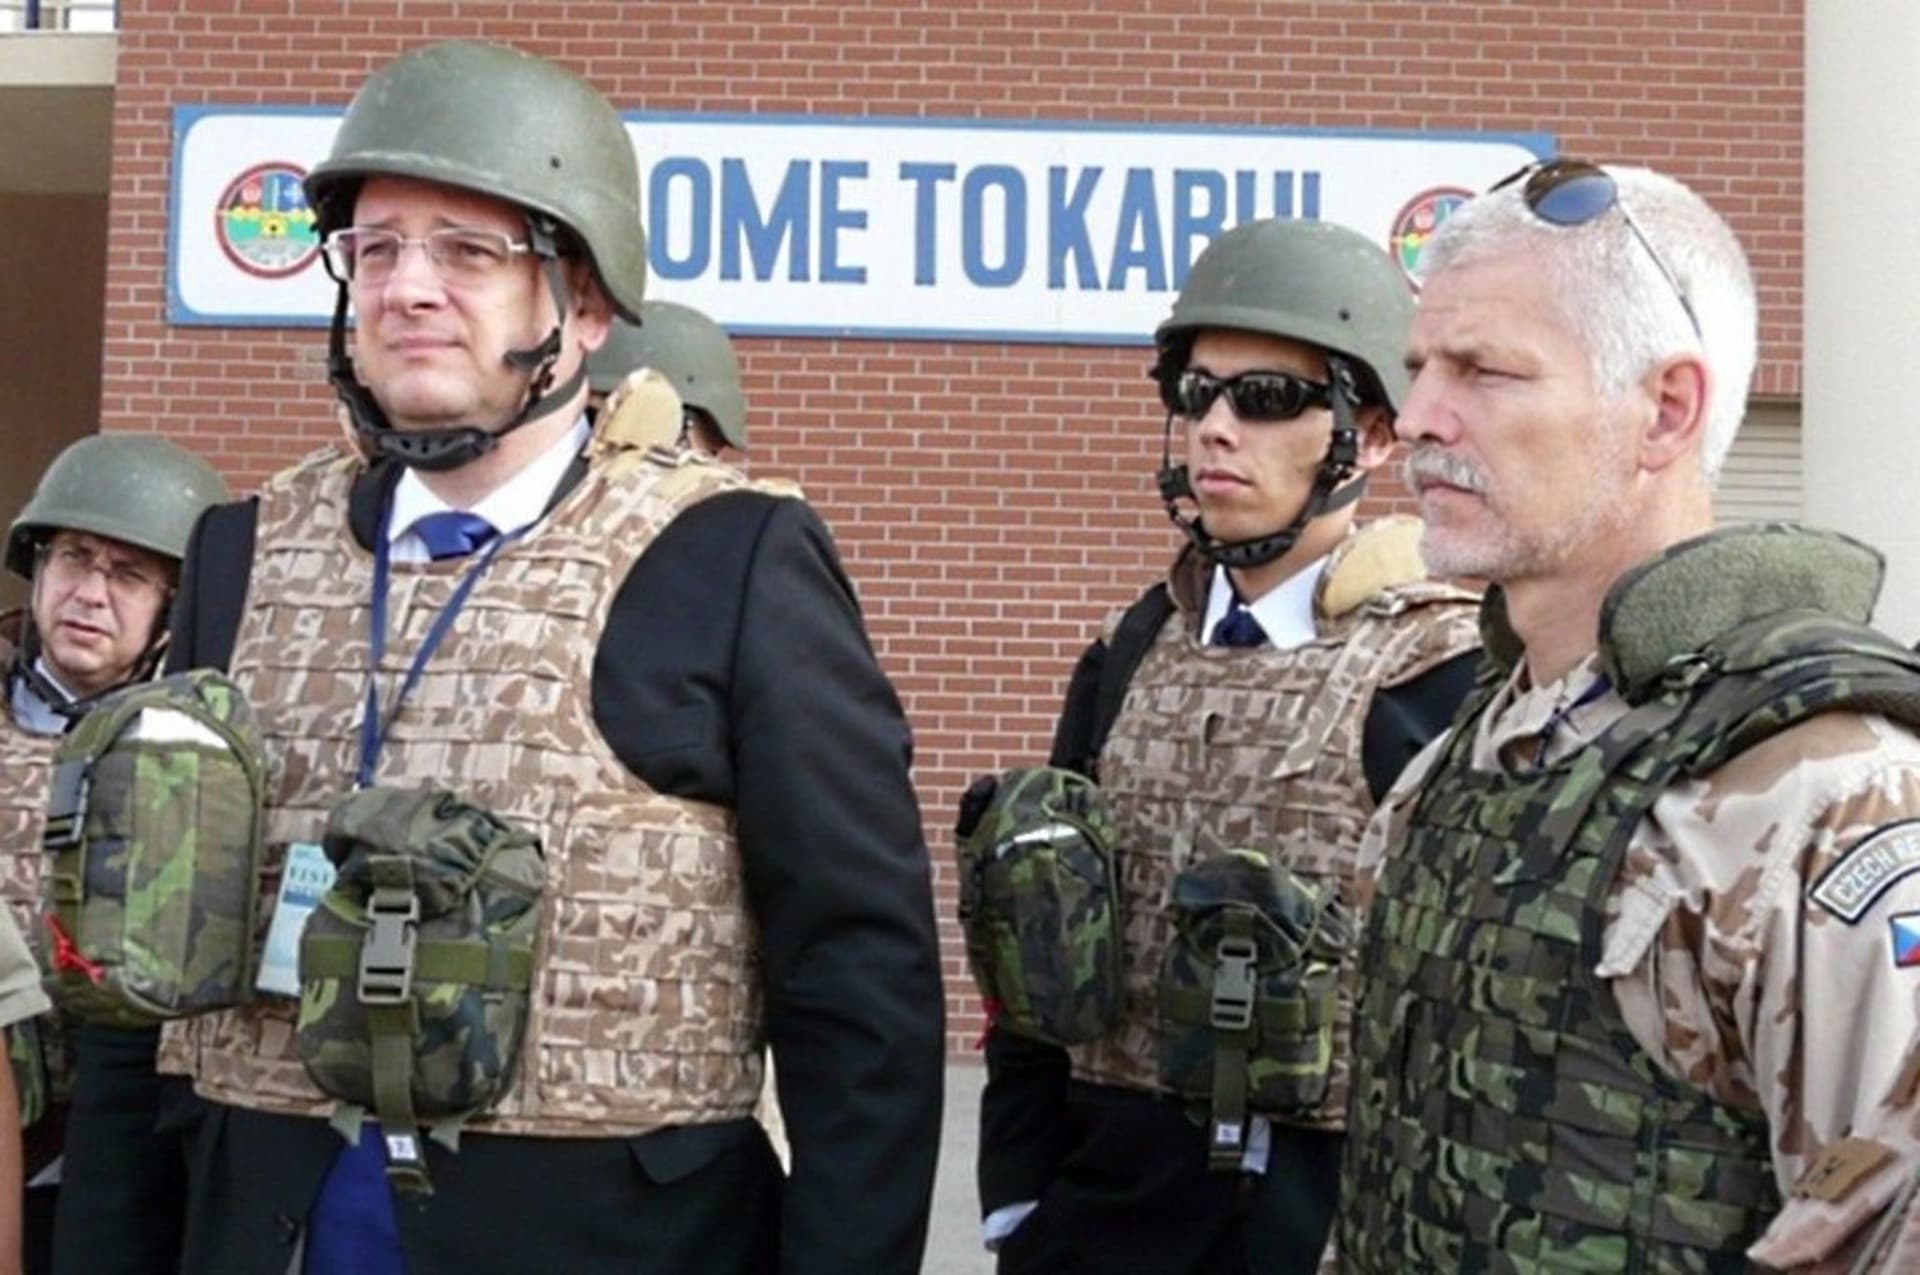 Předseda vlády Petr Nečas (ODS) navštívil za doprovodu Petra Pavla české vojáky v afghánském Lógaru. Snímek je z roku 2012.